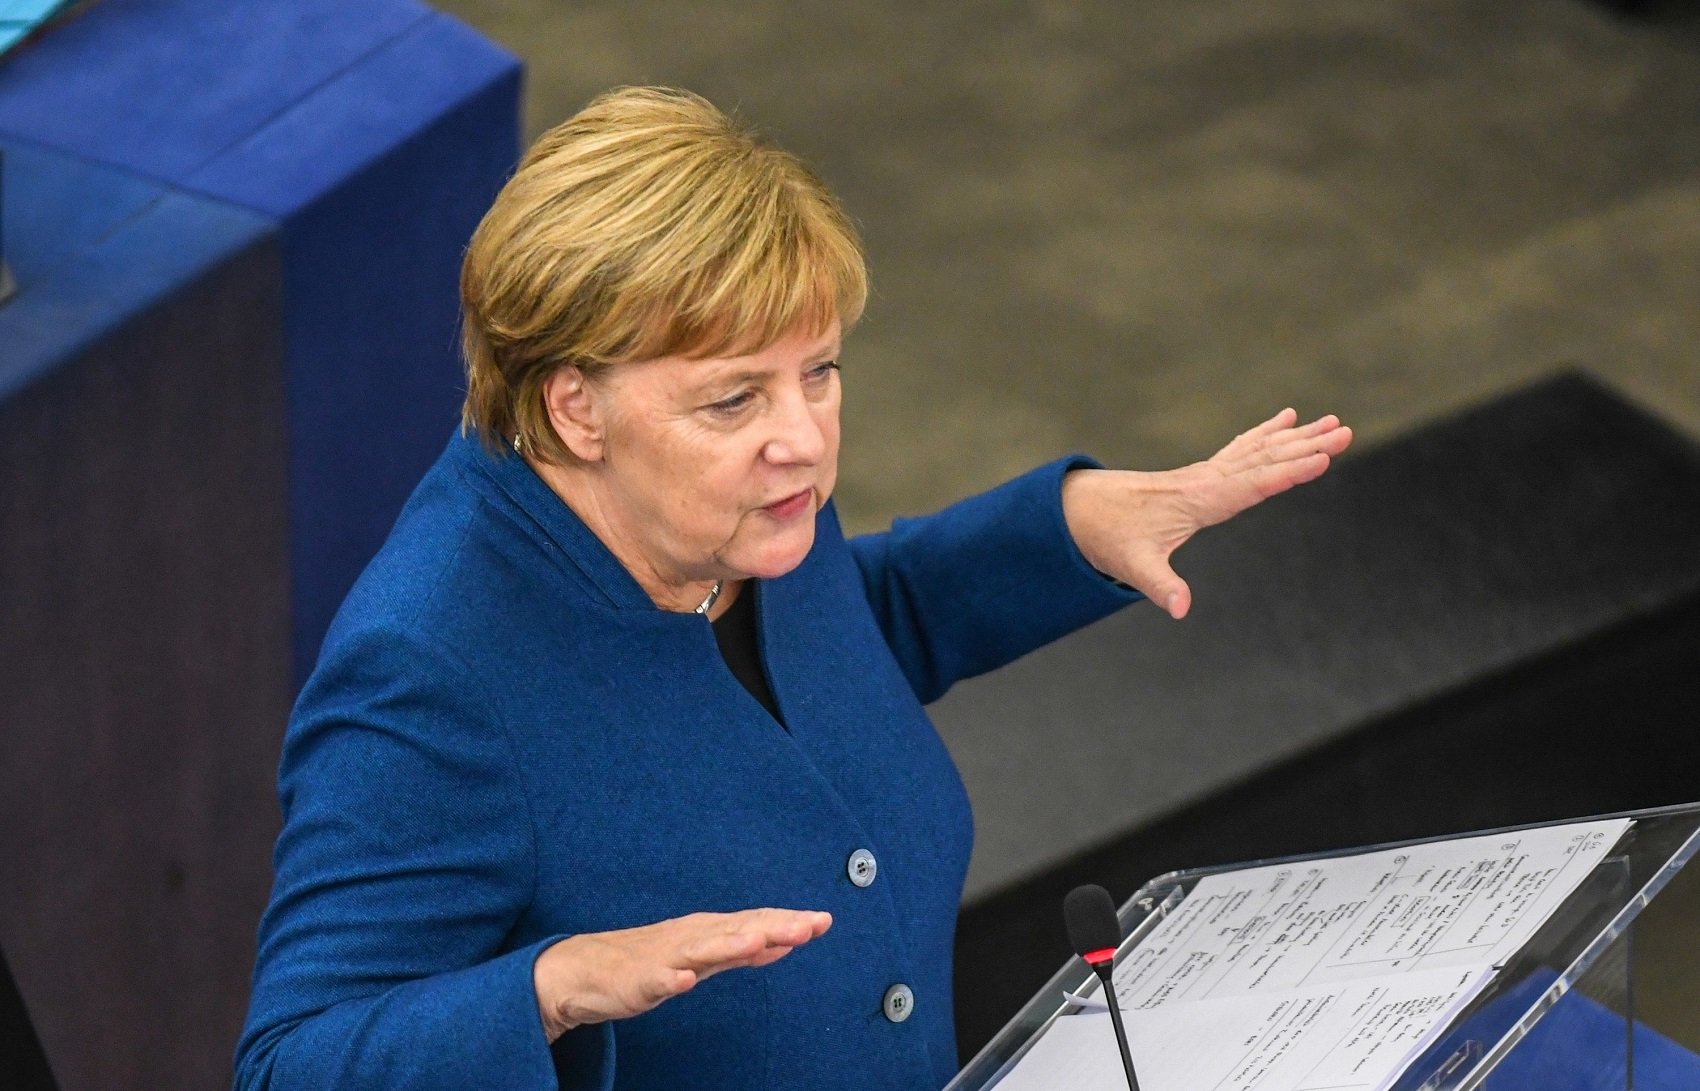 Centenares de políticos hackeados en Alemania, incluida Angela Merkel